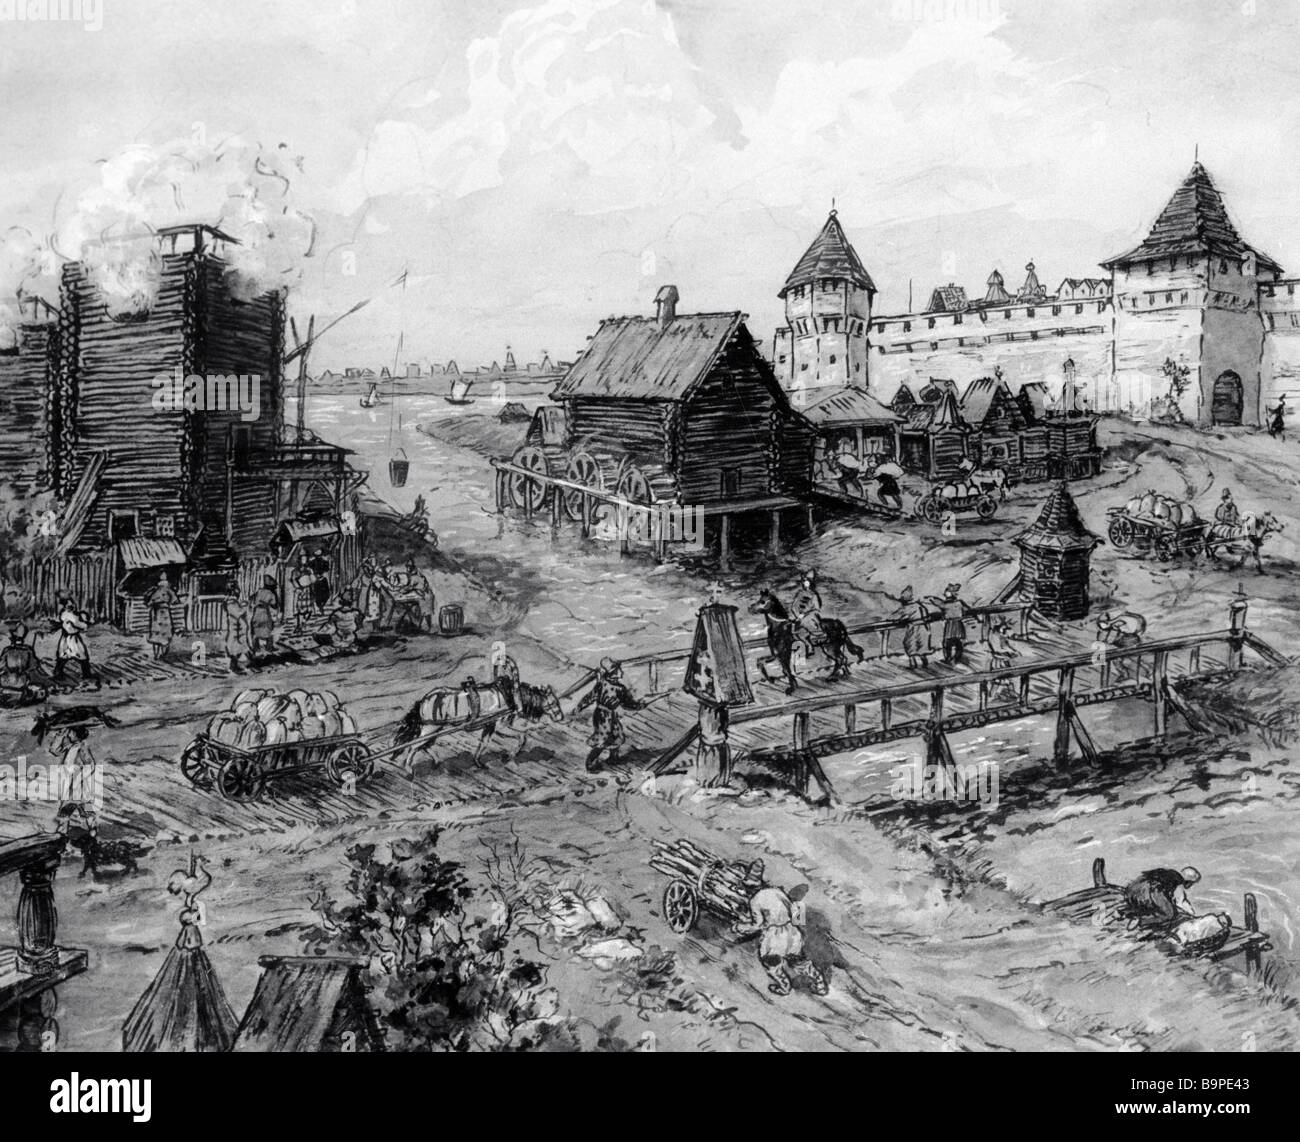 Начало постройки москвы. Основание Москвы 1147 Юрием Долгоруким. Кремль Юрия Долгорукого 1147. Древняя Москва 1147.